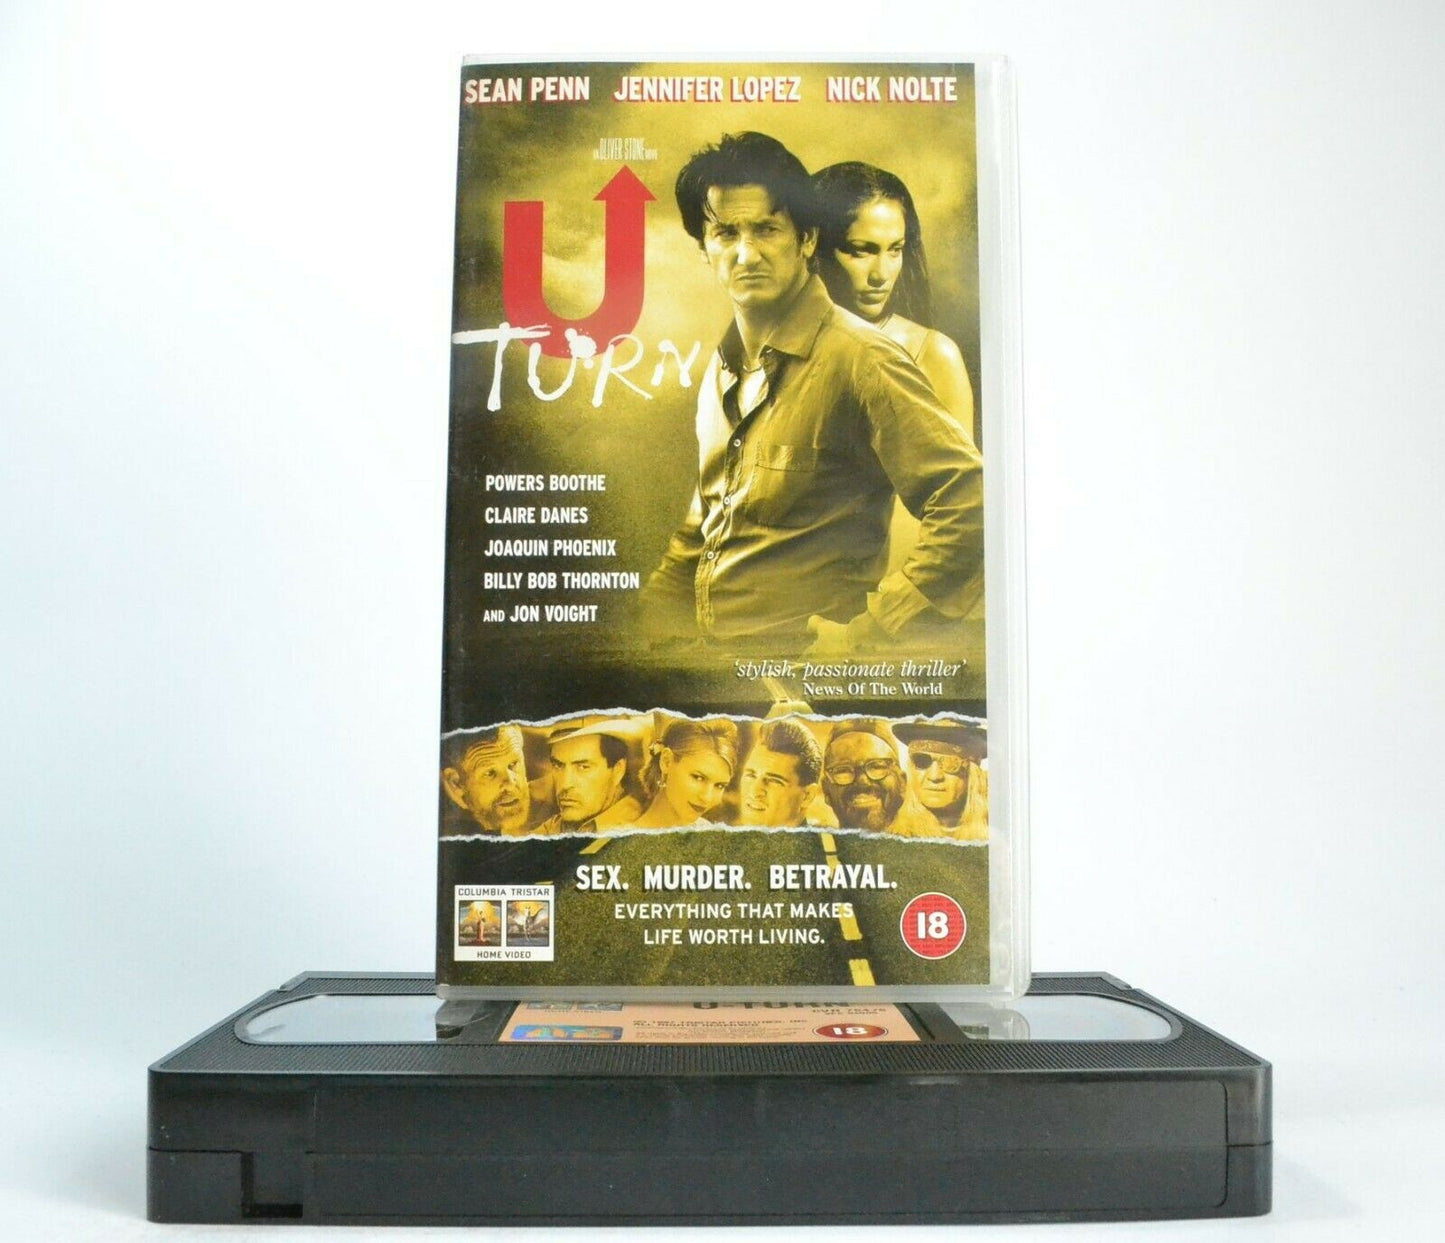 U Turn: A Oliver Stone Film (1997) - Crime Thriller - S.Penn/J.Lopez - Pal VHS-